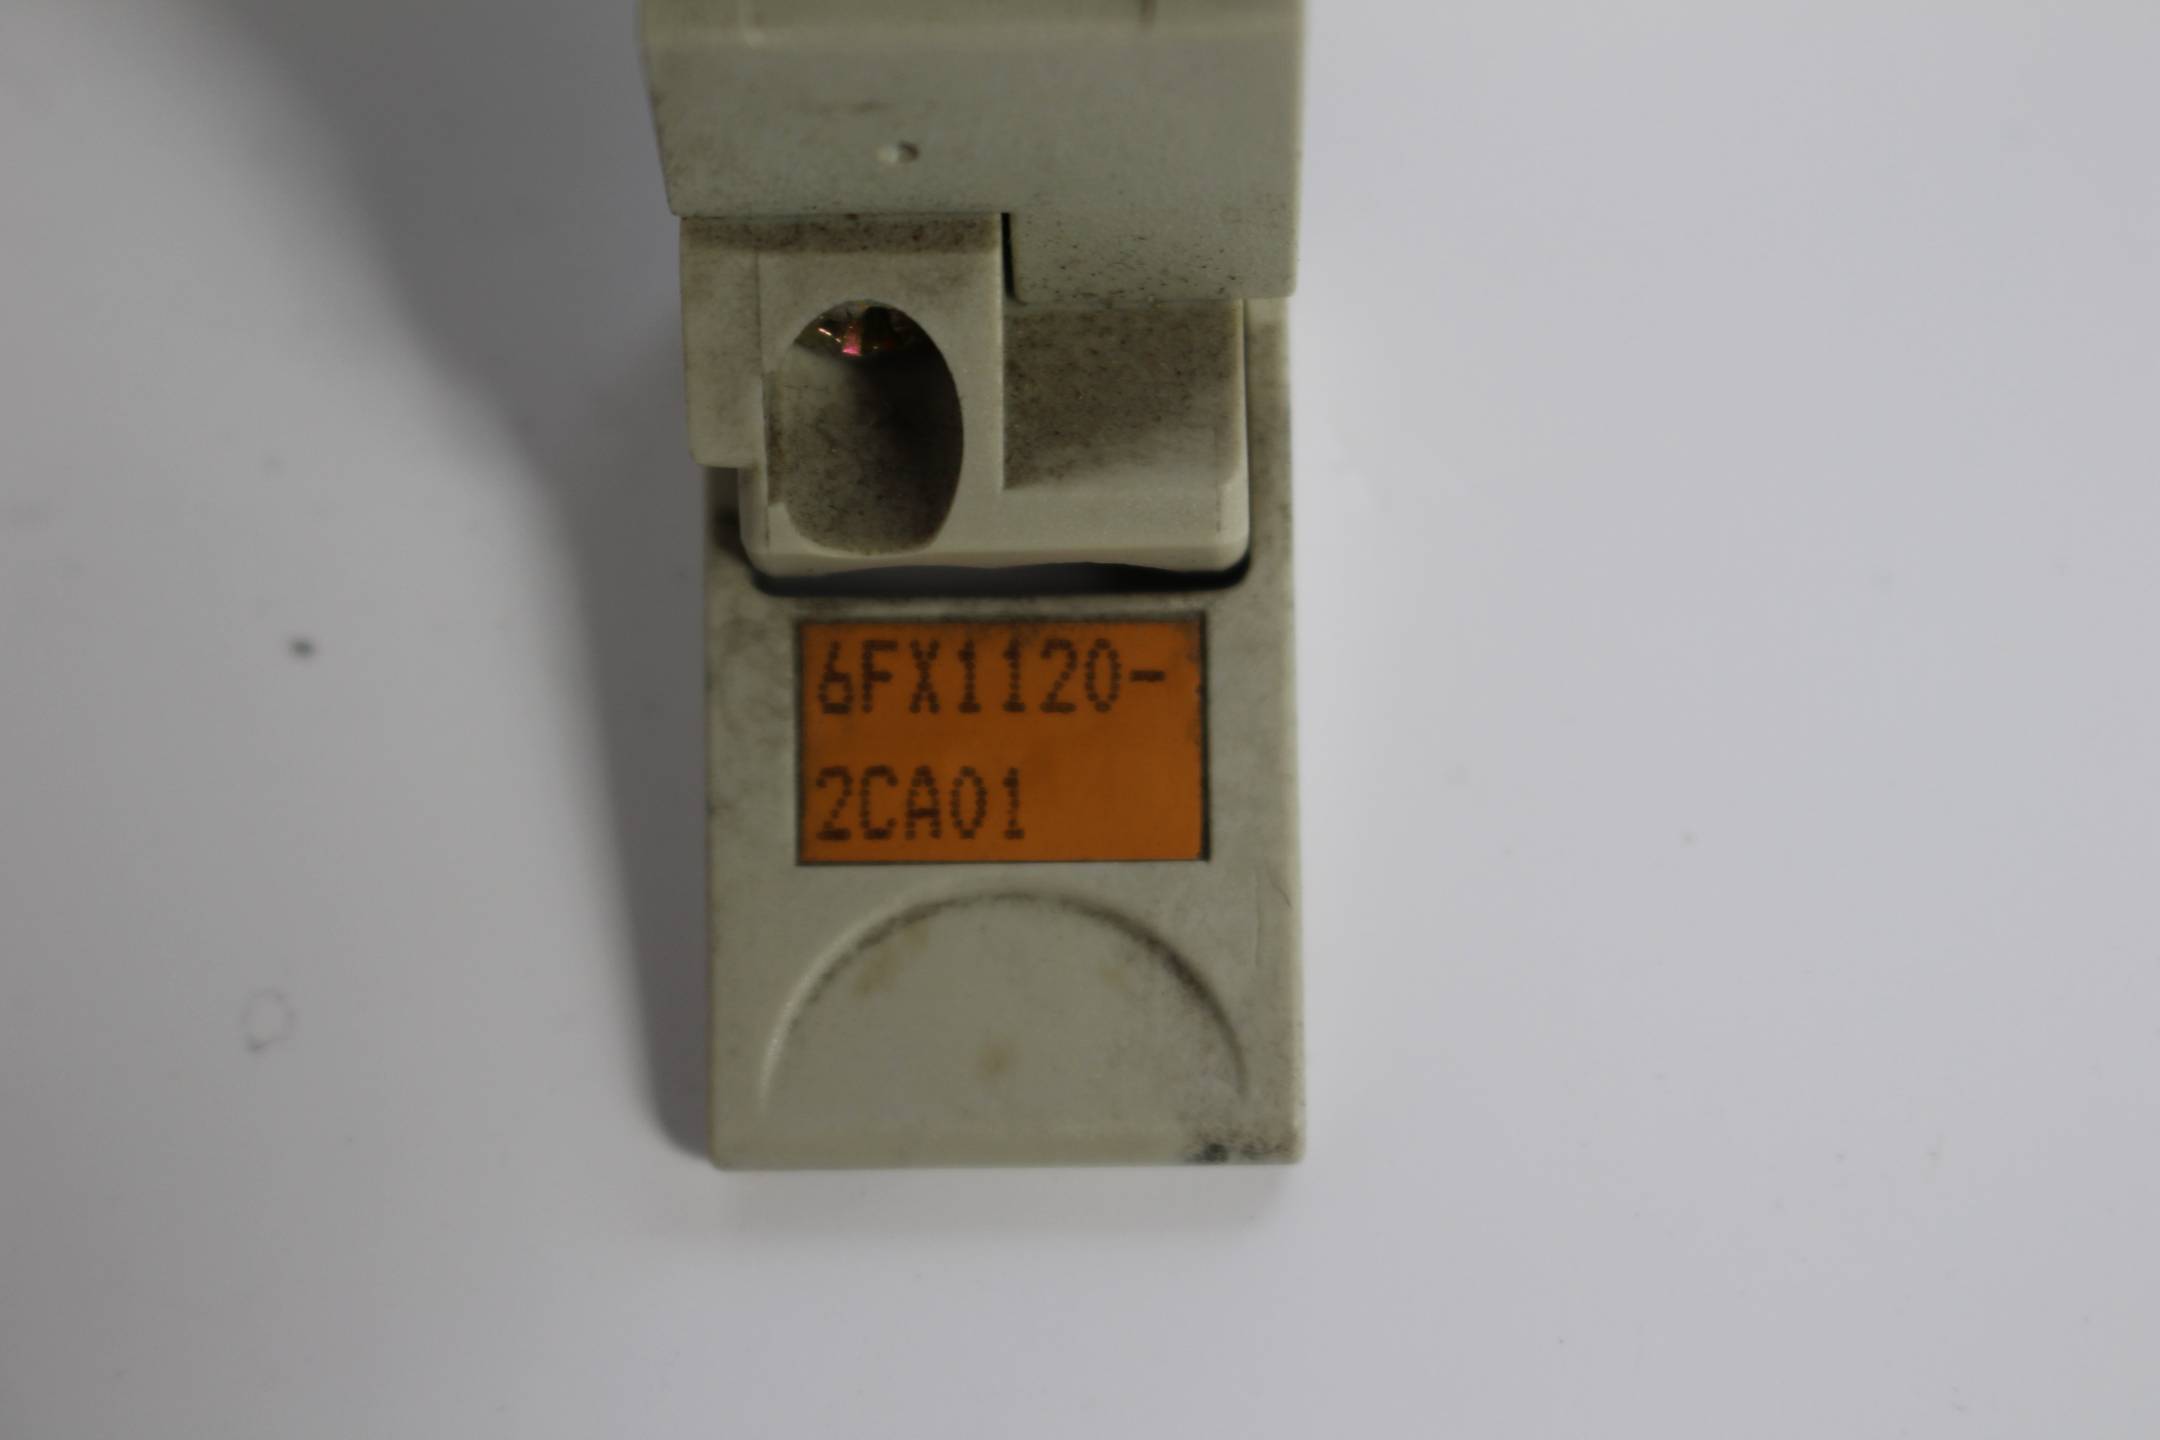 Siemens sinumerik 6FX1120-2CA01 ( 6FX1 120-2CA01 )